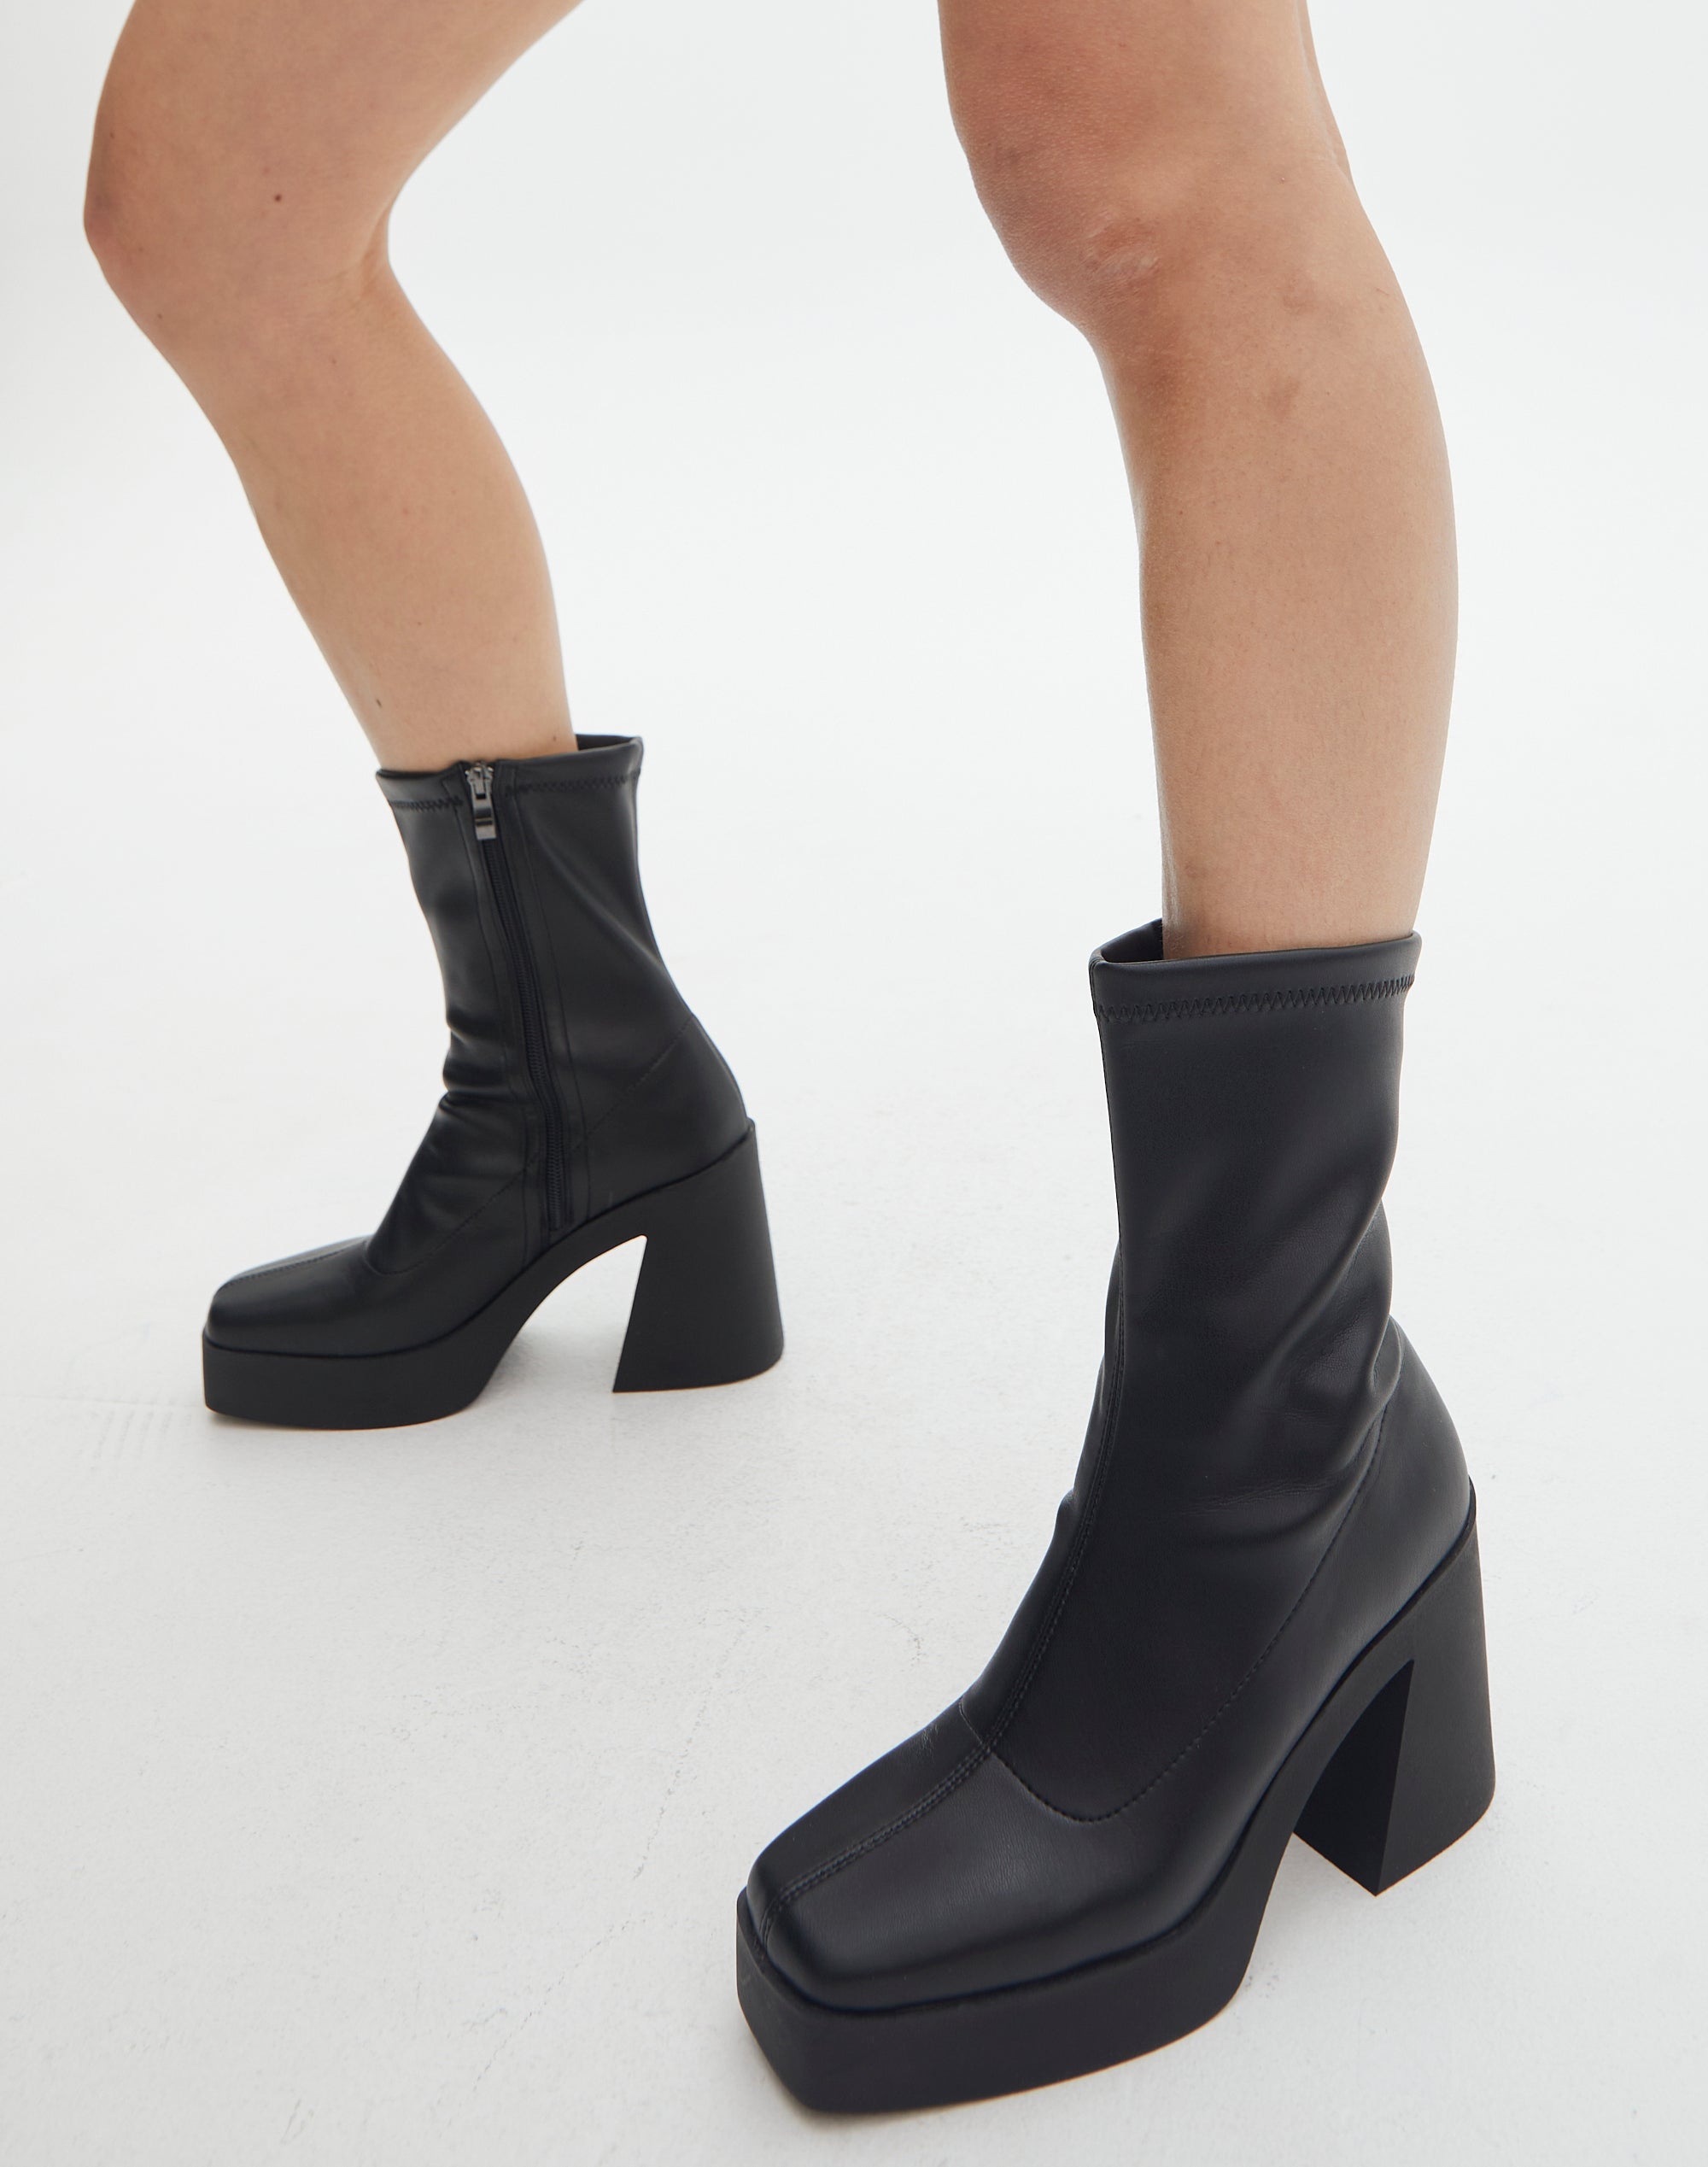 Boot buộc dây - Màu đen - Ladies | H&M VN